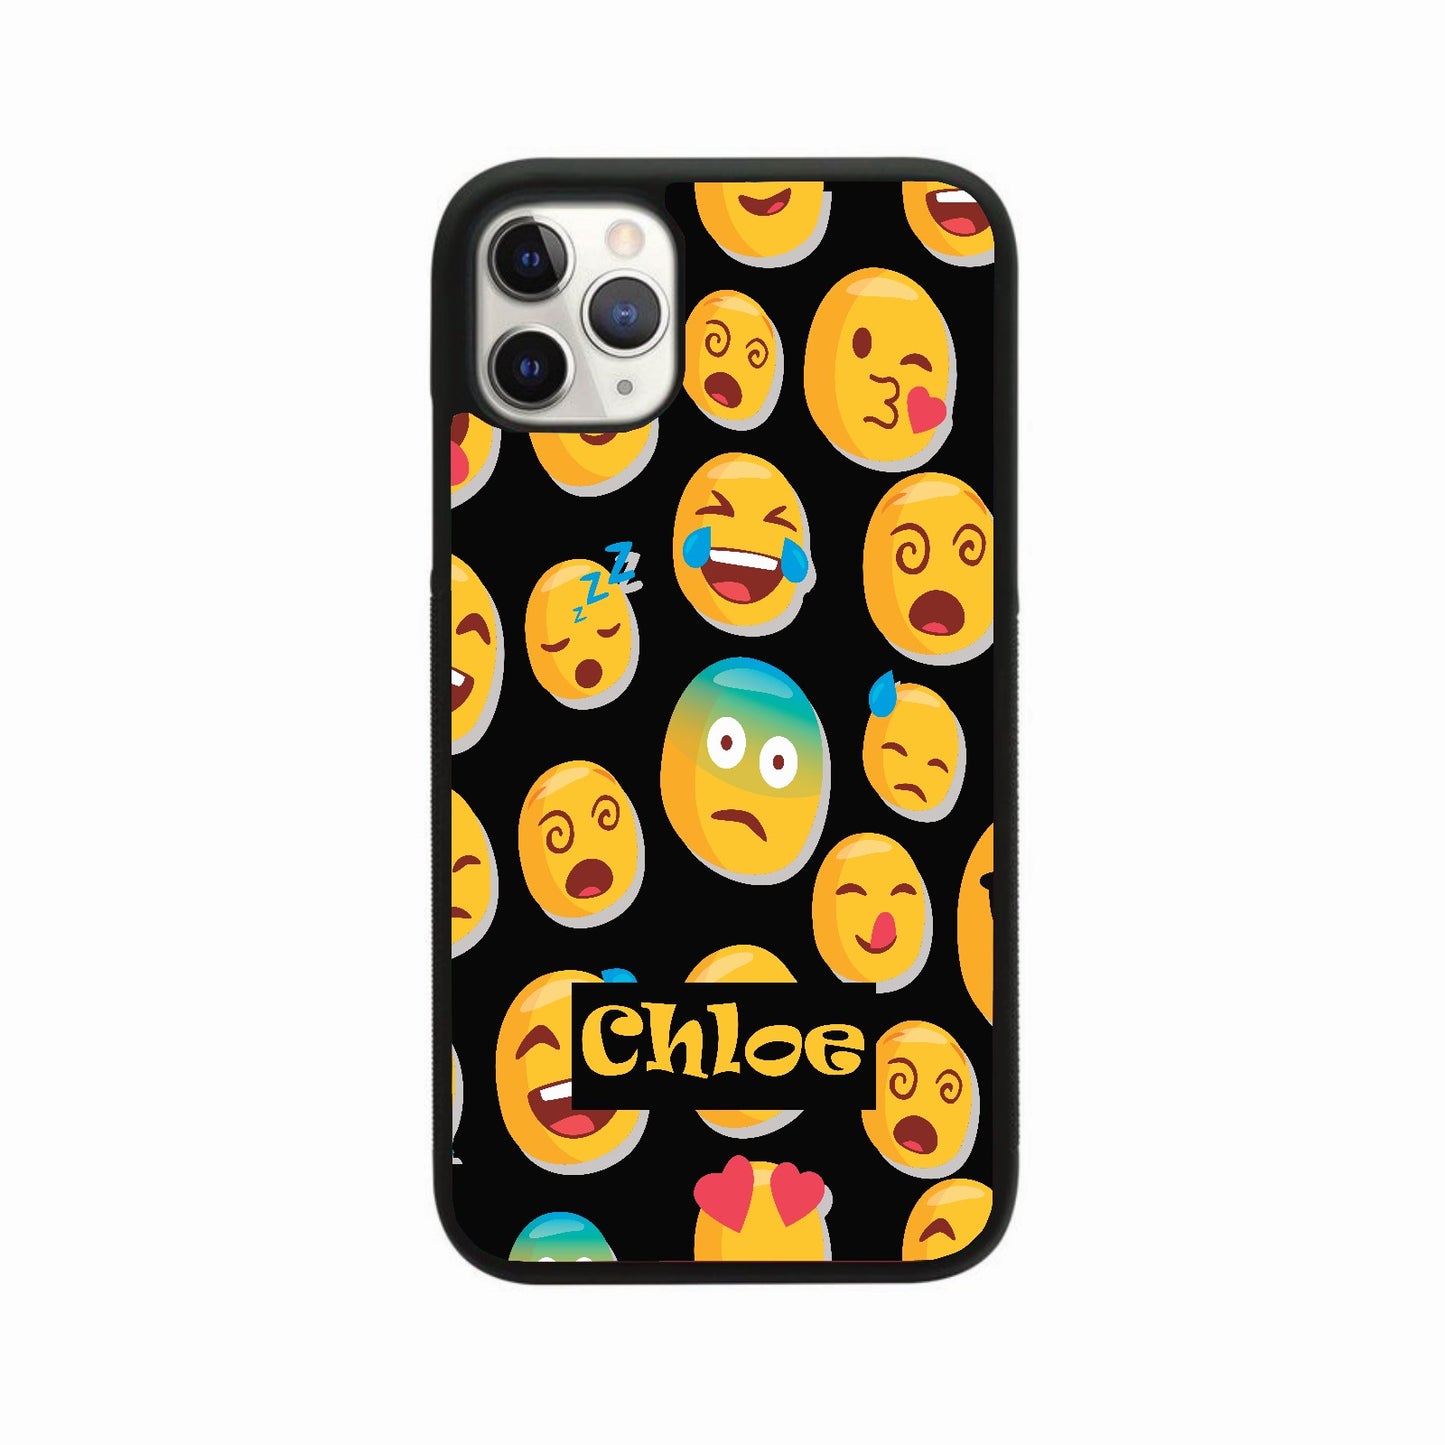 Personalised Emoji Case